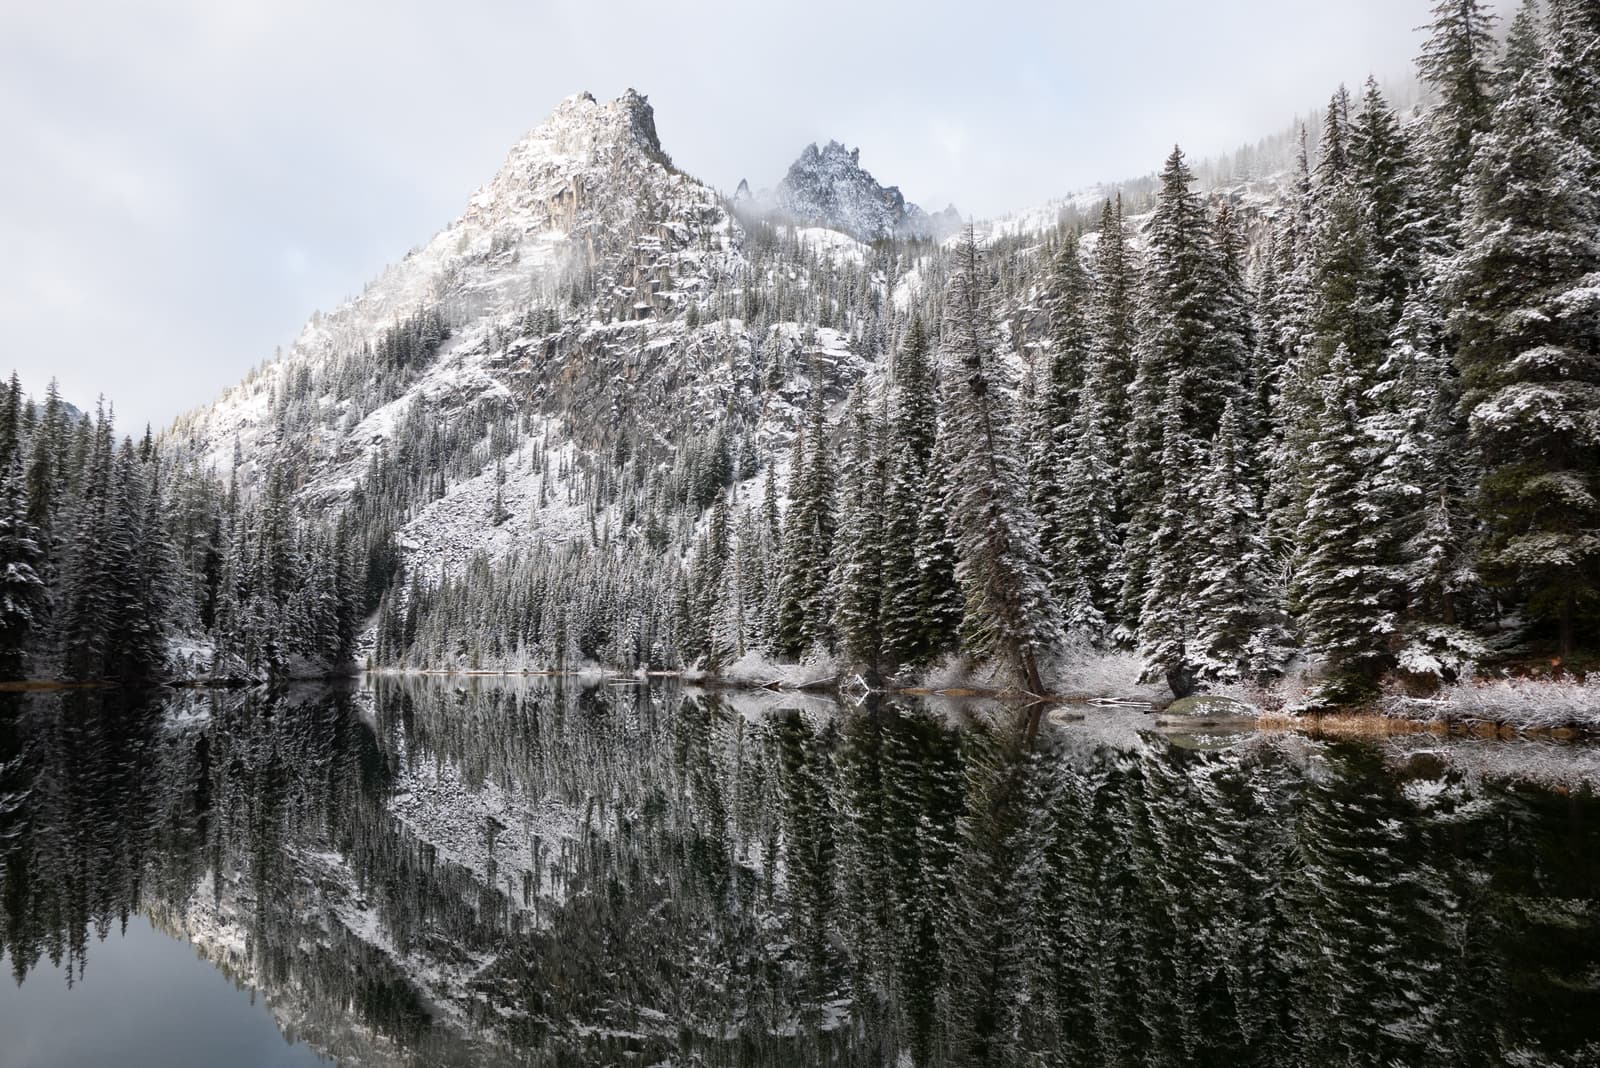 The Enchantments, Alpine Lakes Wilderness, Washington, United States